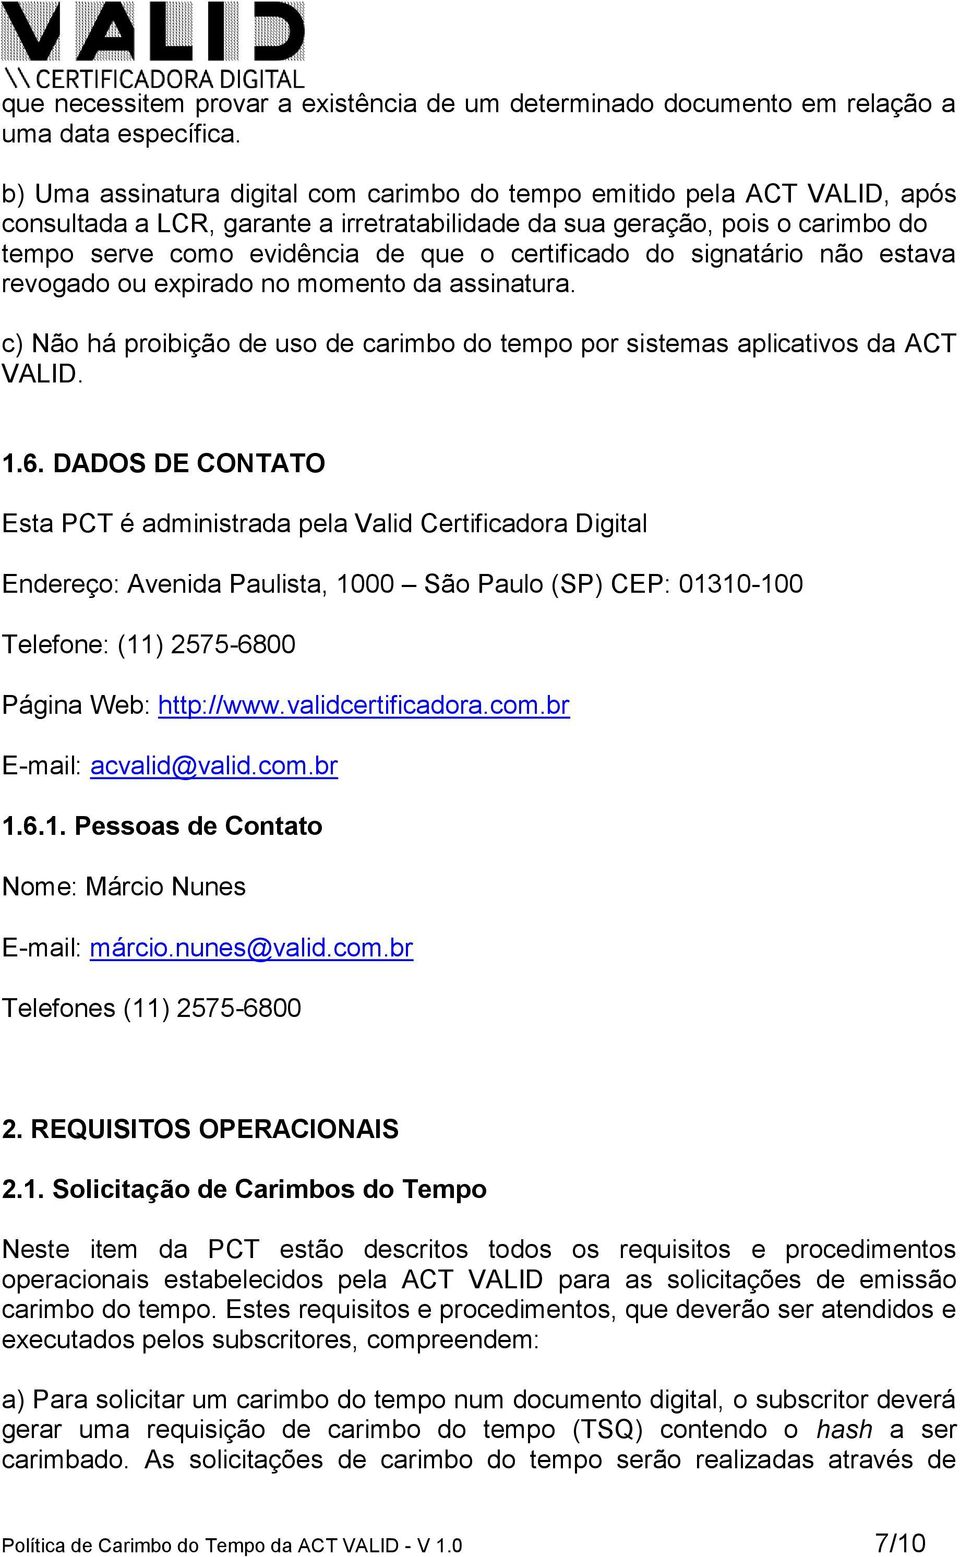 certificado do signatário não estava revogado ou expirado no momento da assinatura. c) Não há proibição de uso de carimbo do tempo por sistemas aplicativos da ACT VALID. 1.6.